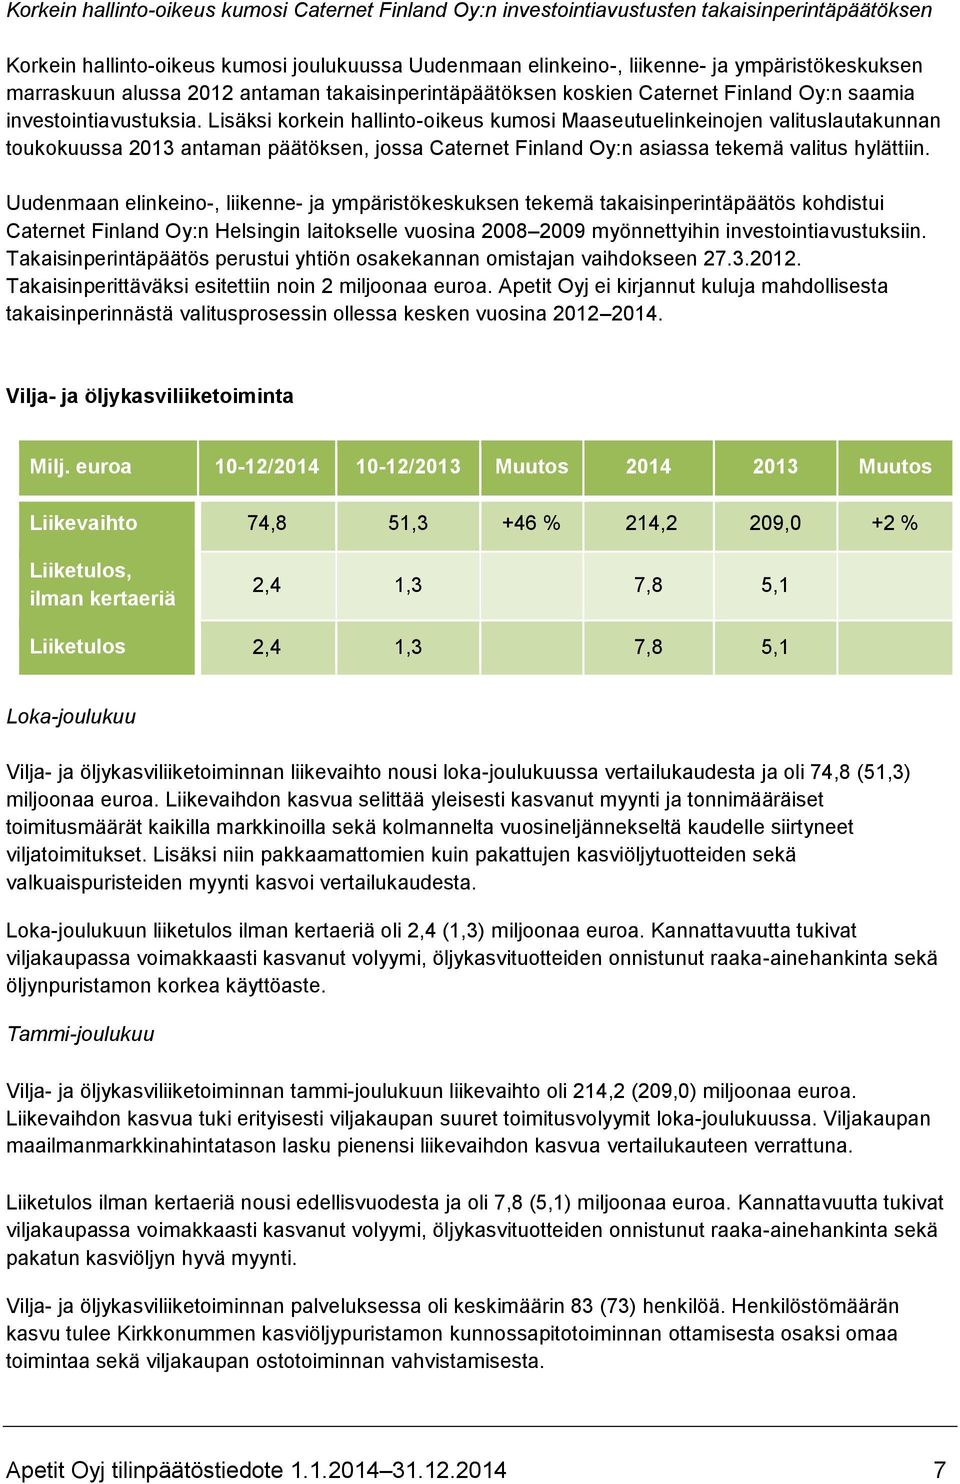 Lisäksi korkein hallinto-oikeus kumosi Maaseutuelinkeinojen valituslautakunnan toukokuussa 2013 antaman päätöksen, jossa Caternet Finland Oy:n asiassa tekemä valitus hylättiin.